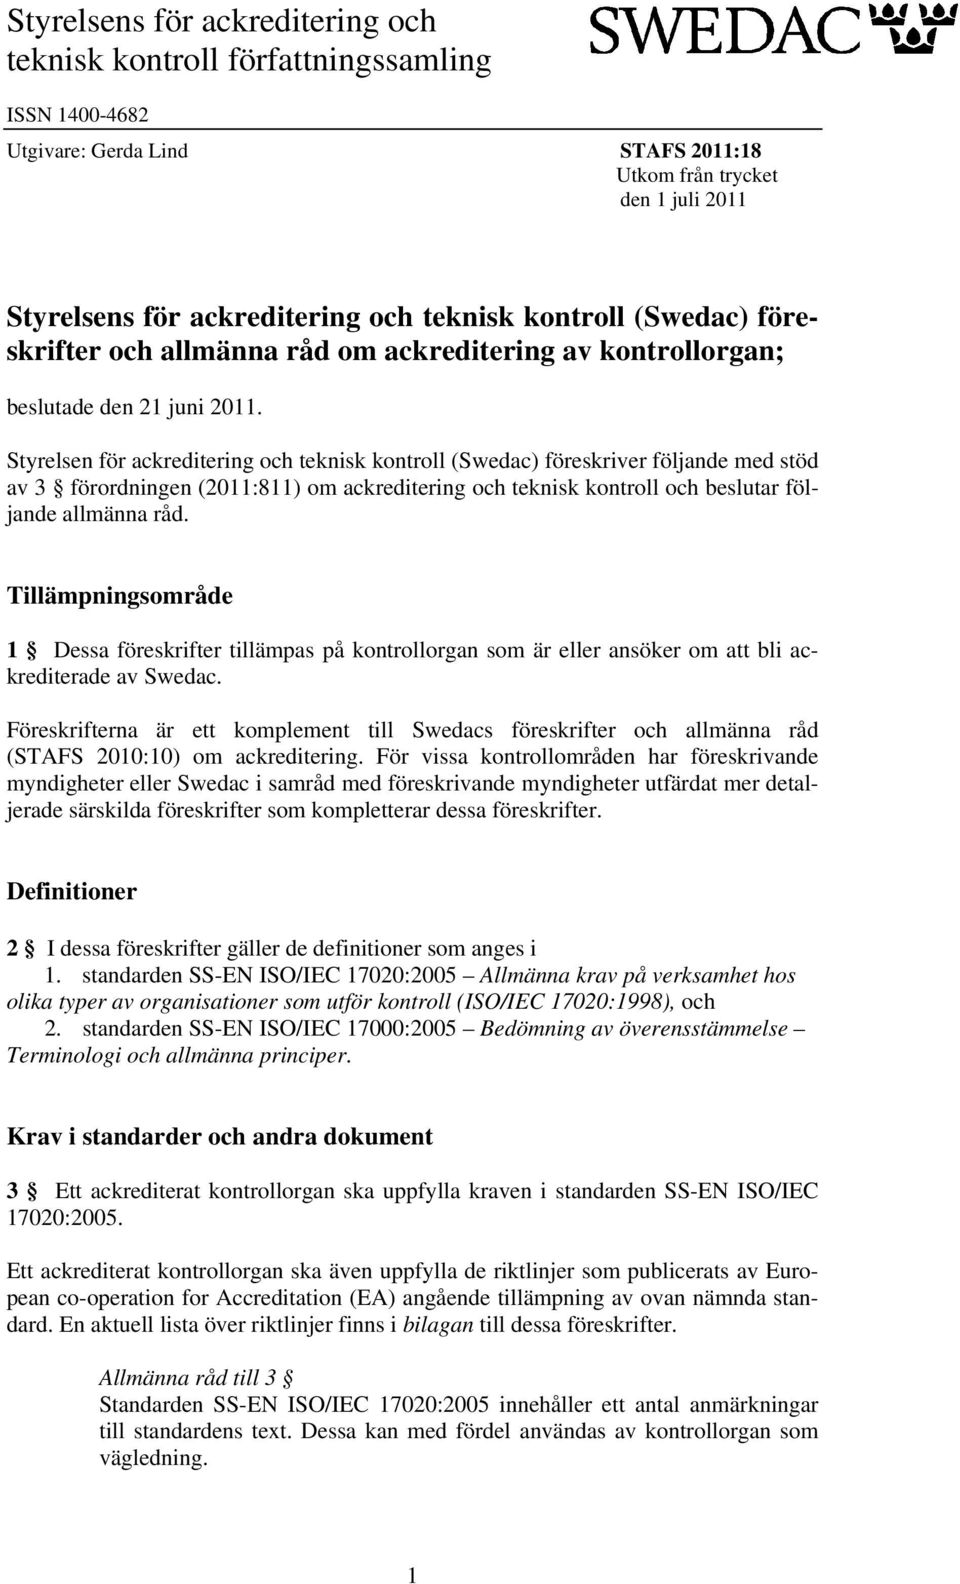 Styrelsen för ackreditering och teknisk kontroll (Swedac) föreskriver följande med stöd av 3 förordningen (2011:811) om ackreditering och teknisk kontroll och beslutar följande allmänna råd.